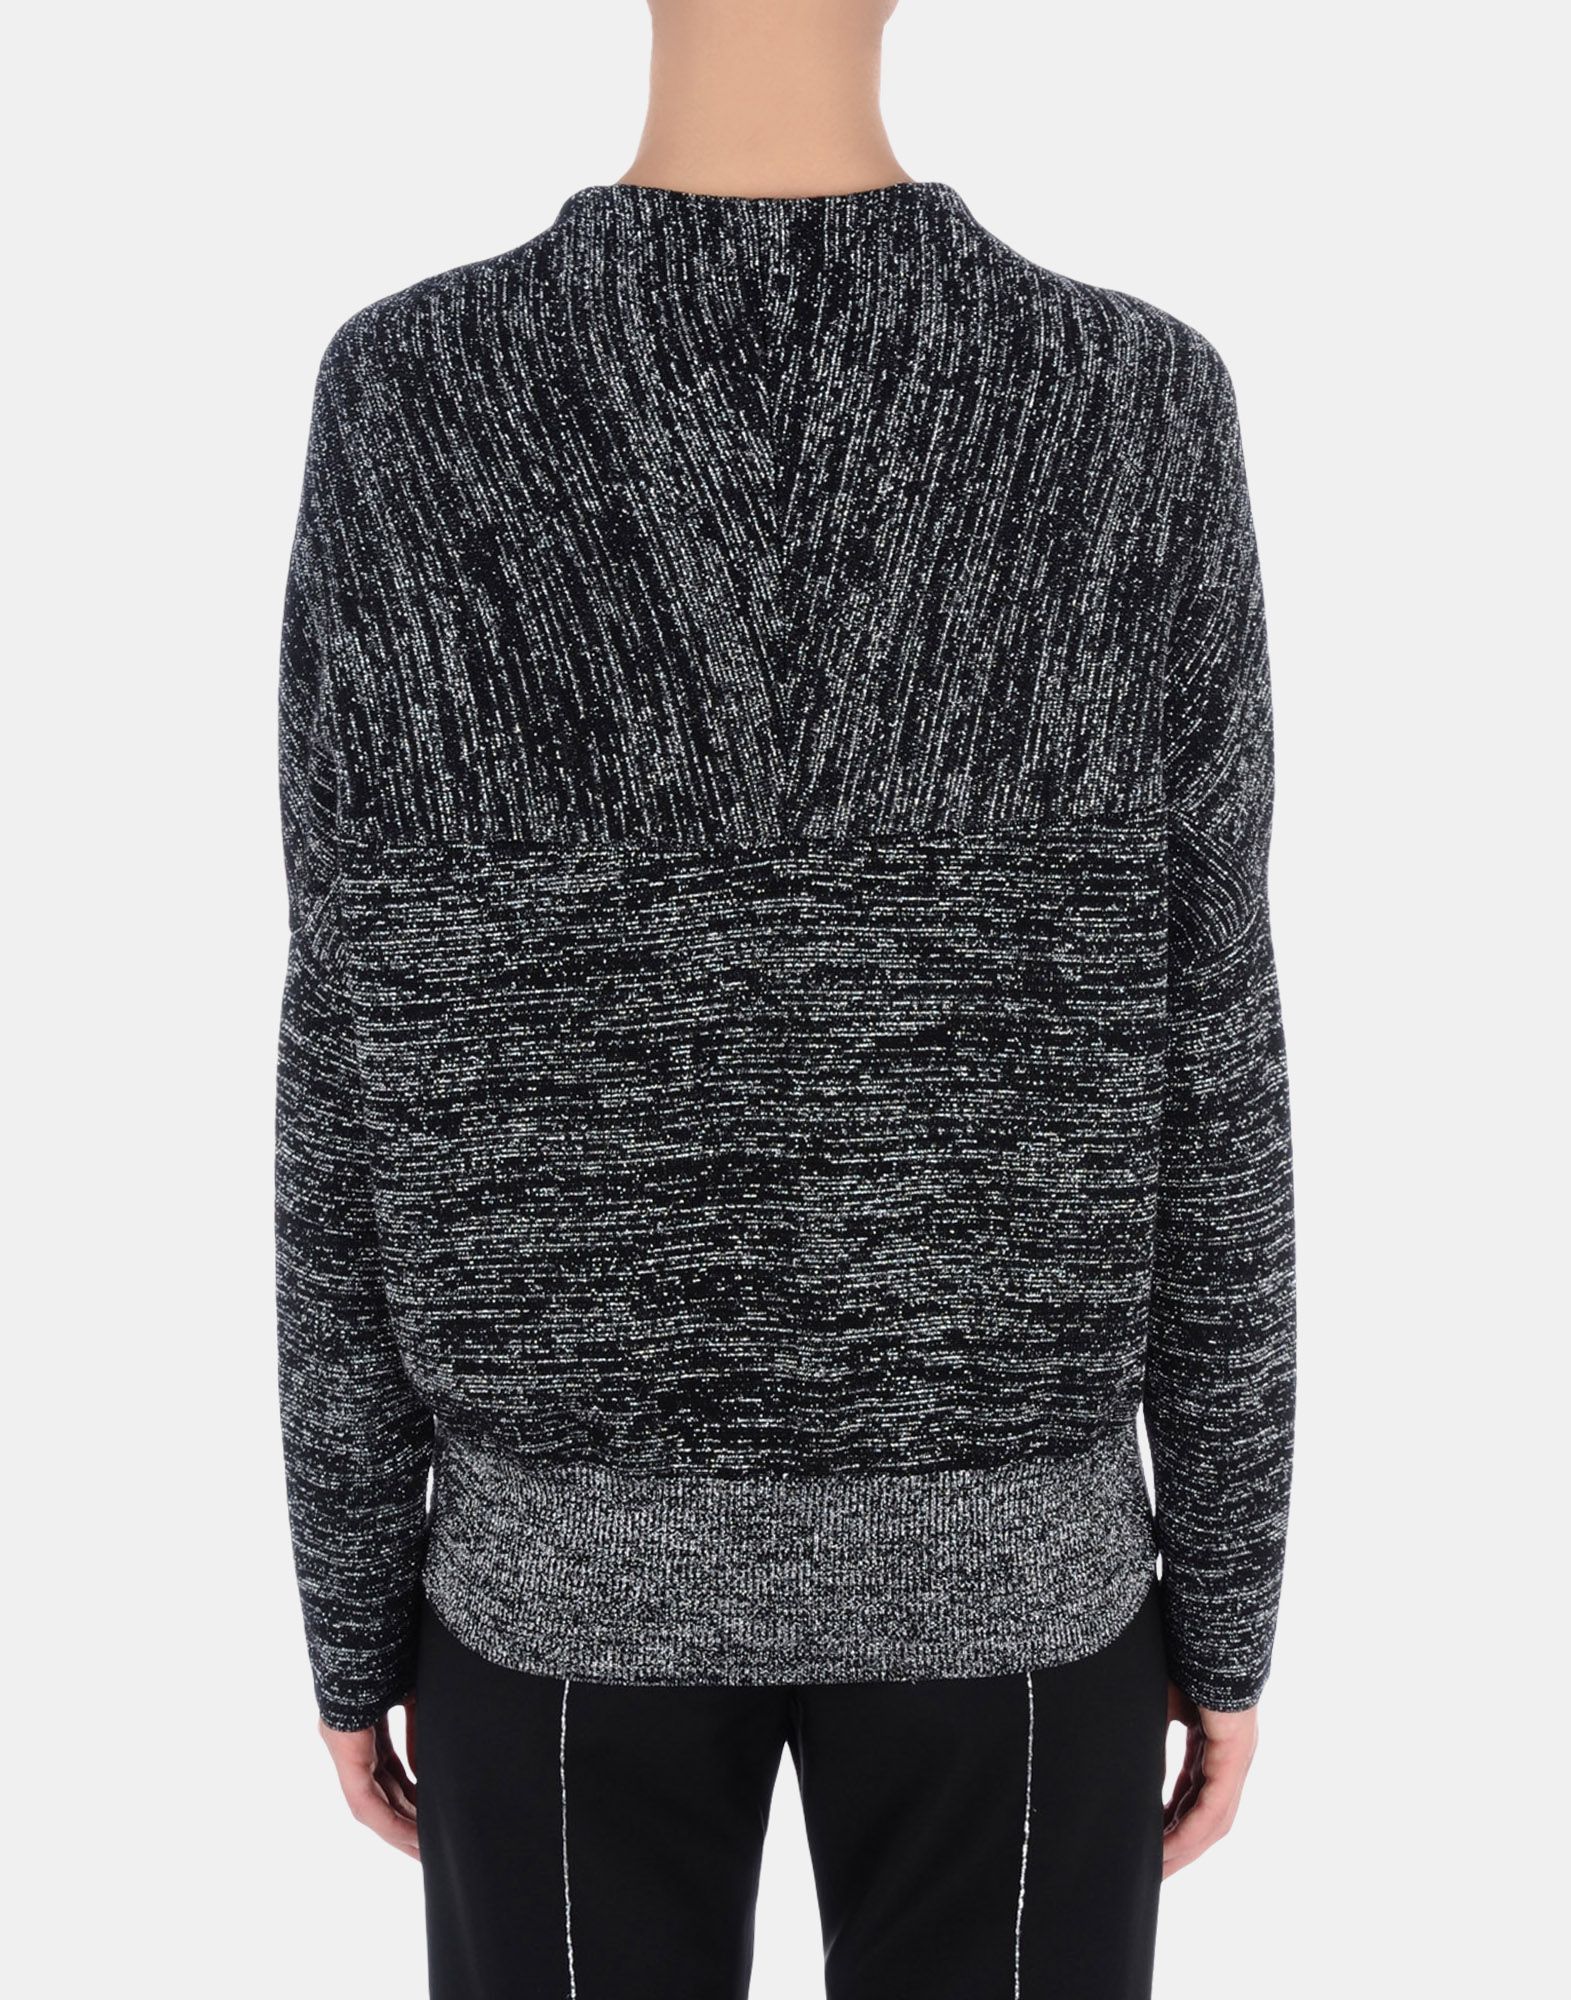 Sweater Women - Knitwear Women on Jil Sander Online Store